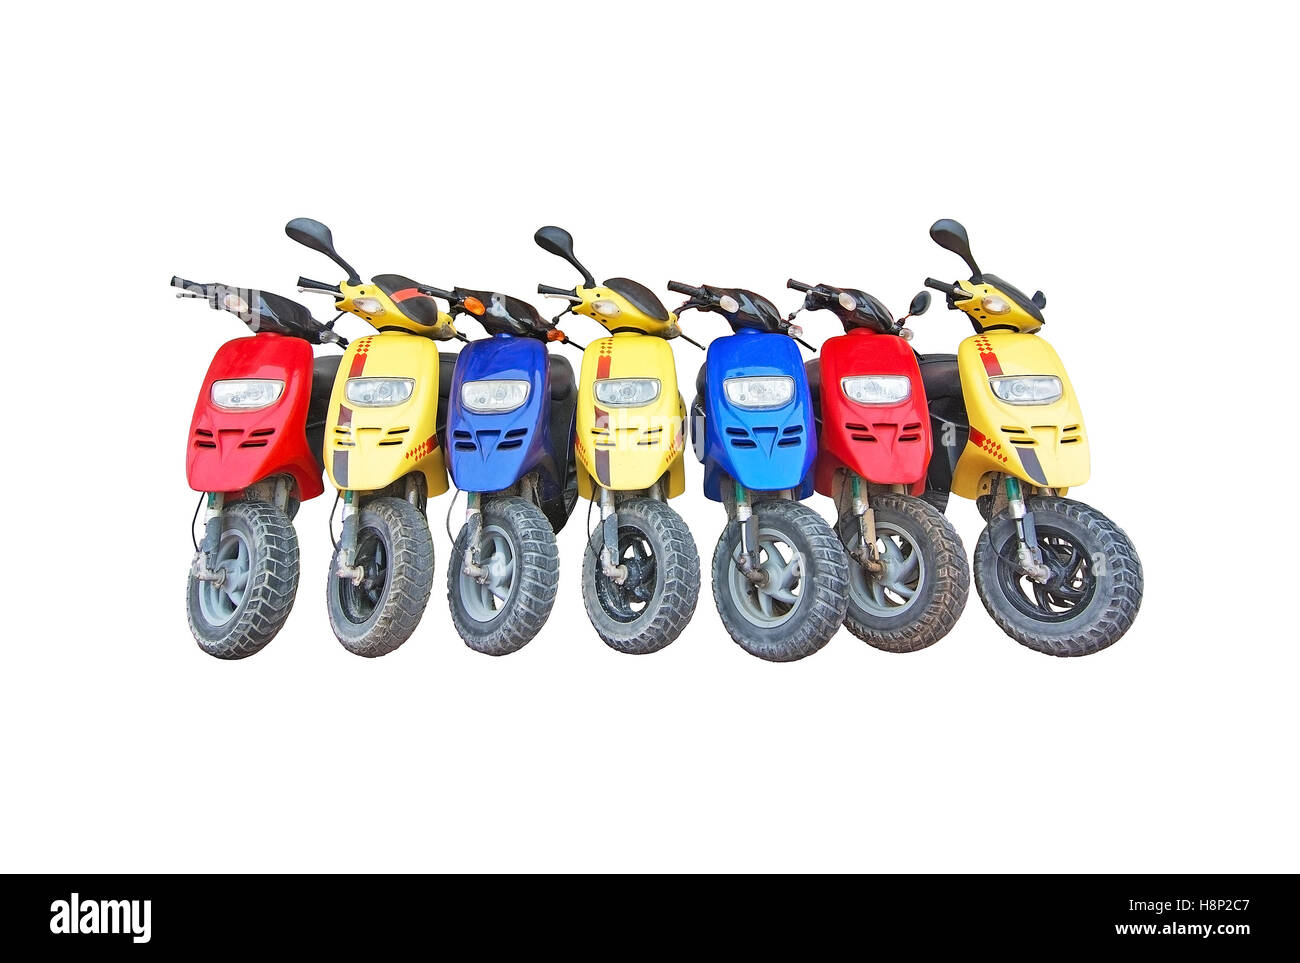 Siete motos en azul, amarillo y rojo estacionado aislado en blanco. Foto de stock